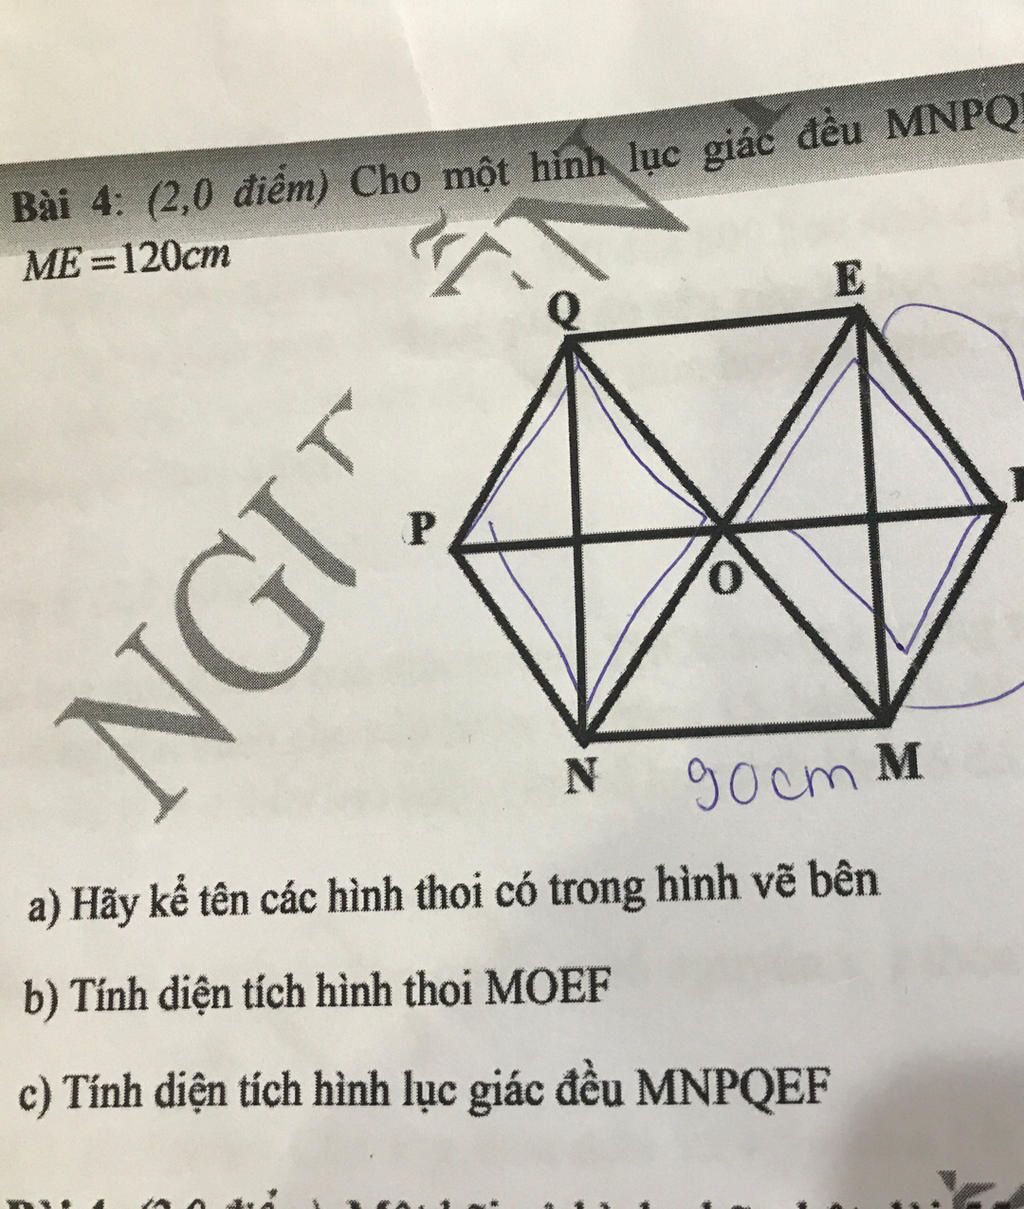 Bài 4: (2,0 điểm) Cho một hình lục giác đều MNPQ ME=120cm 7 NGIT 0 ...